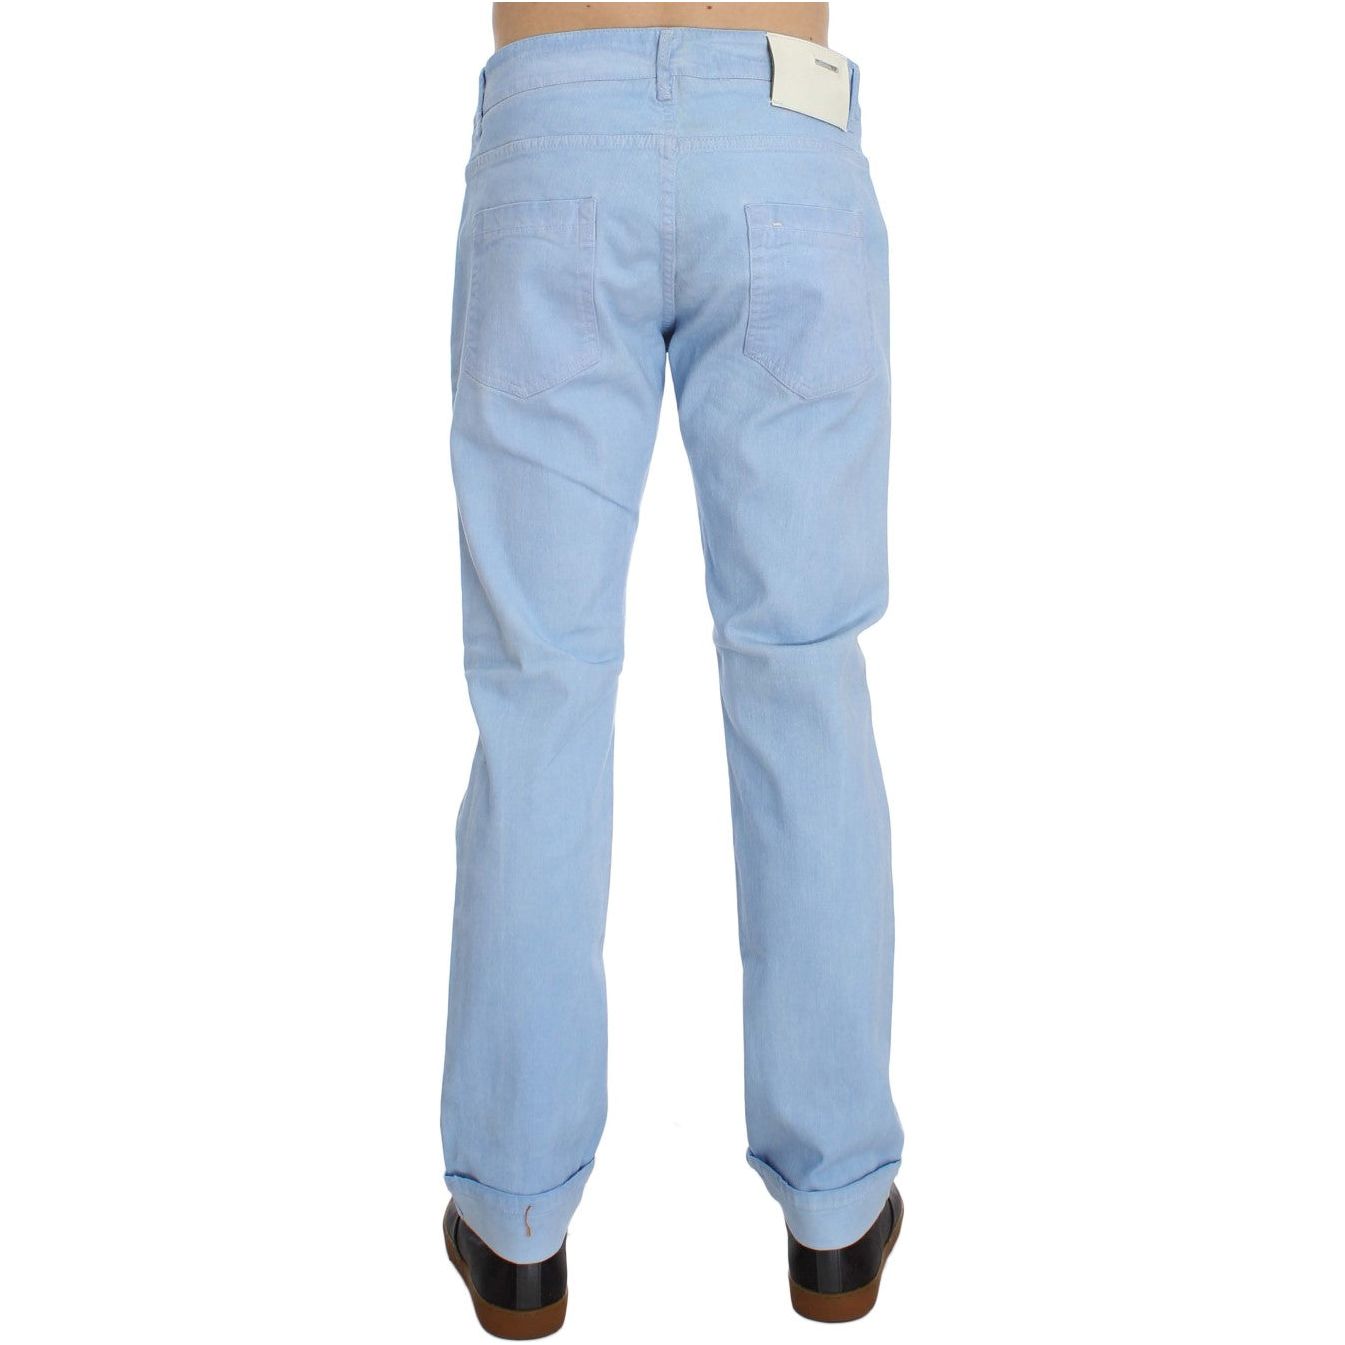 Acht Elegant Low Waist Regular Fit Men's Jeans blue-cotton-stretch-low-waist-fit-jeans